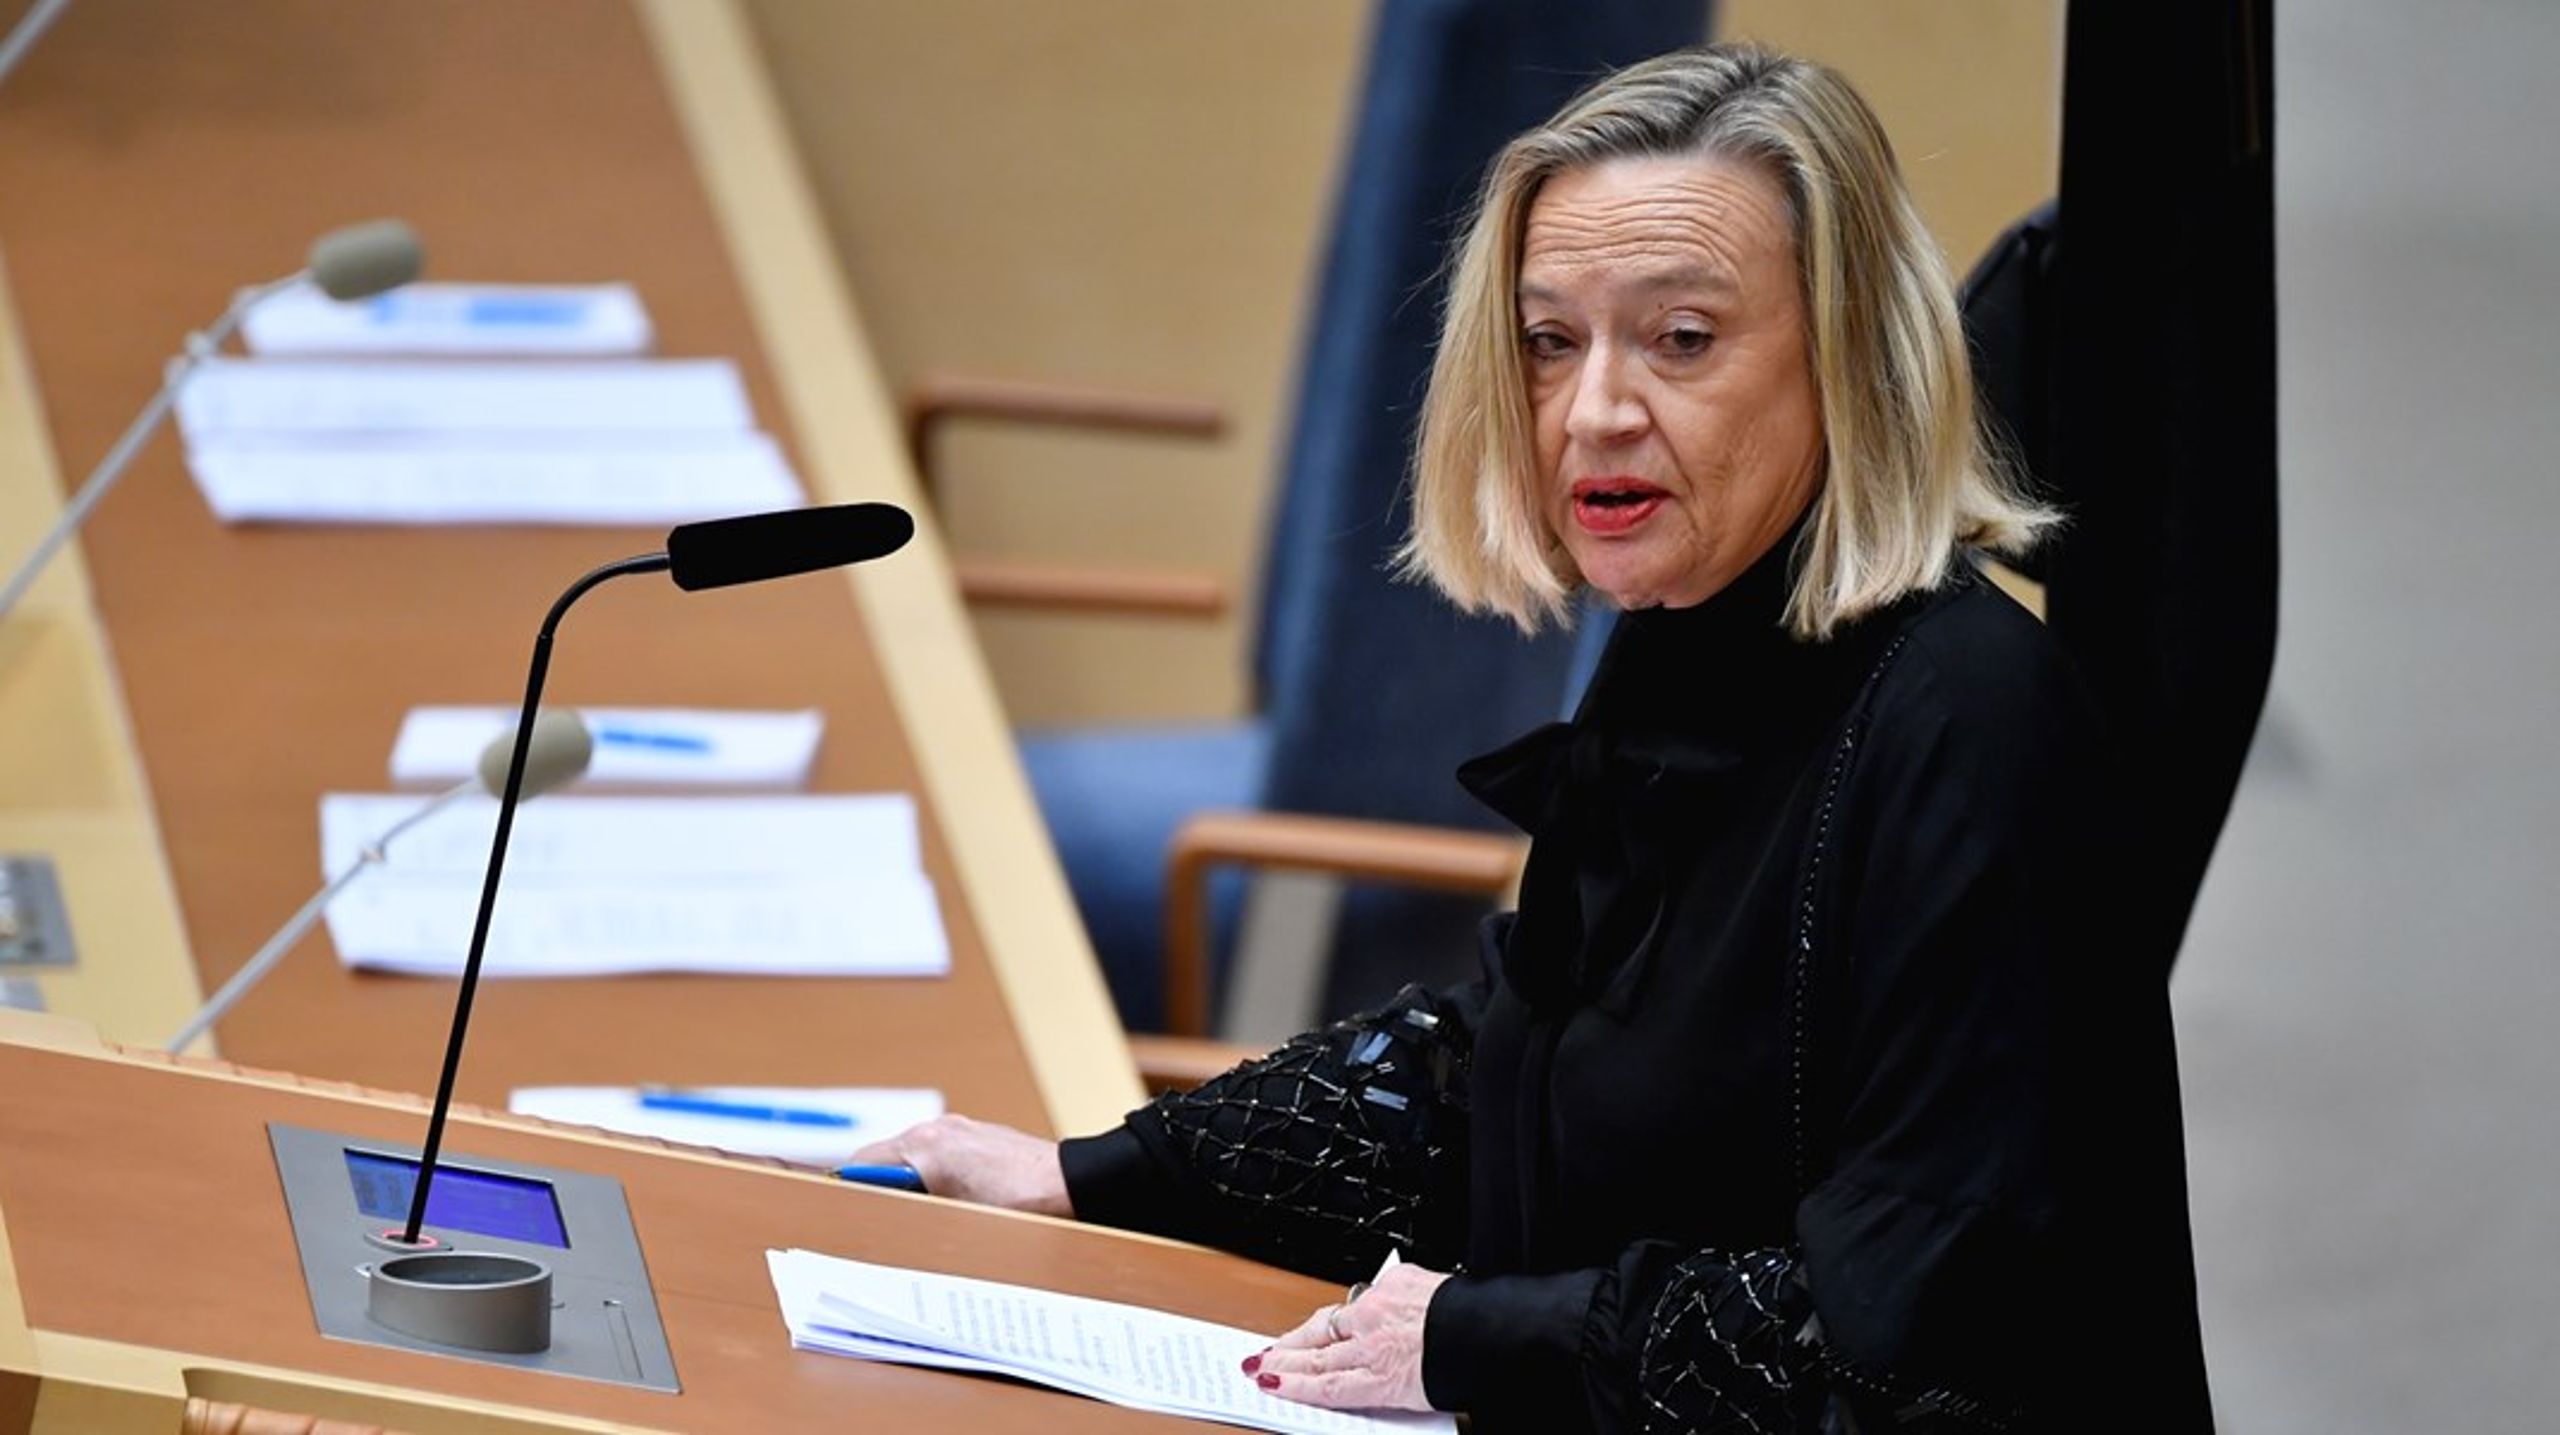 Vänsterpartiets Karin Rågsjö säger att de kommer att lägga fram ett eget förslag om Allmänna arvsfonden, eventuellt tillsammans med andra partier som är kritiska till Riksrevisionens förslag om att lägga ner den. <br>